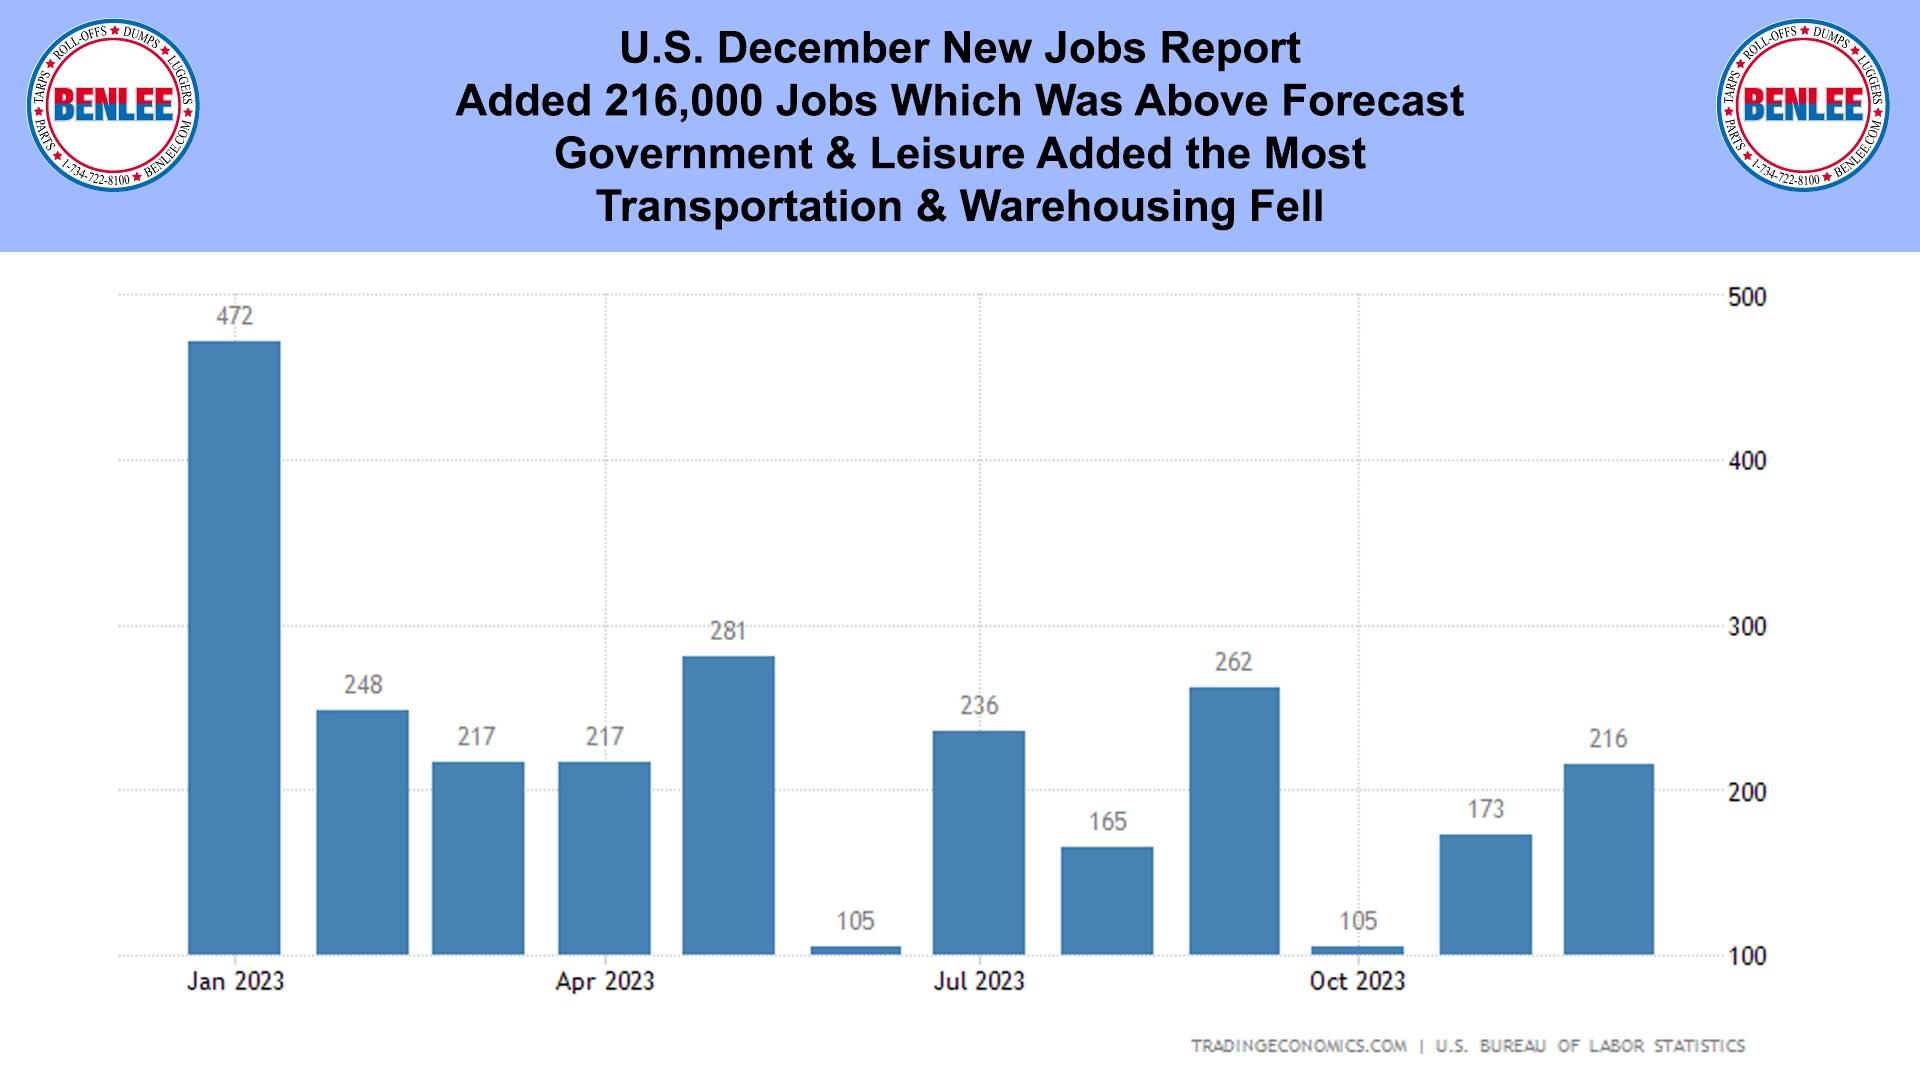 U.S. December New Jobs Report